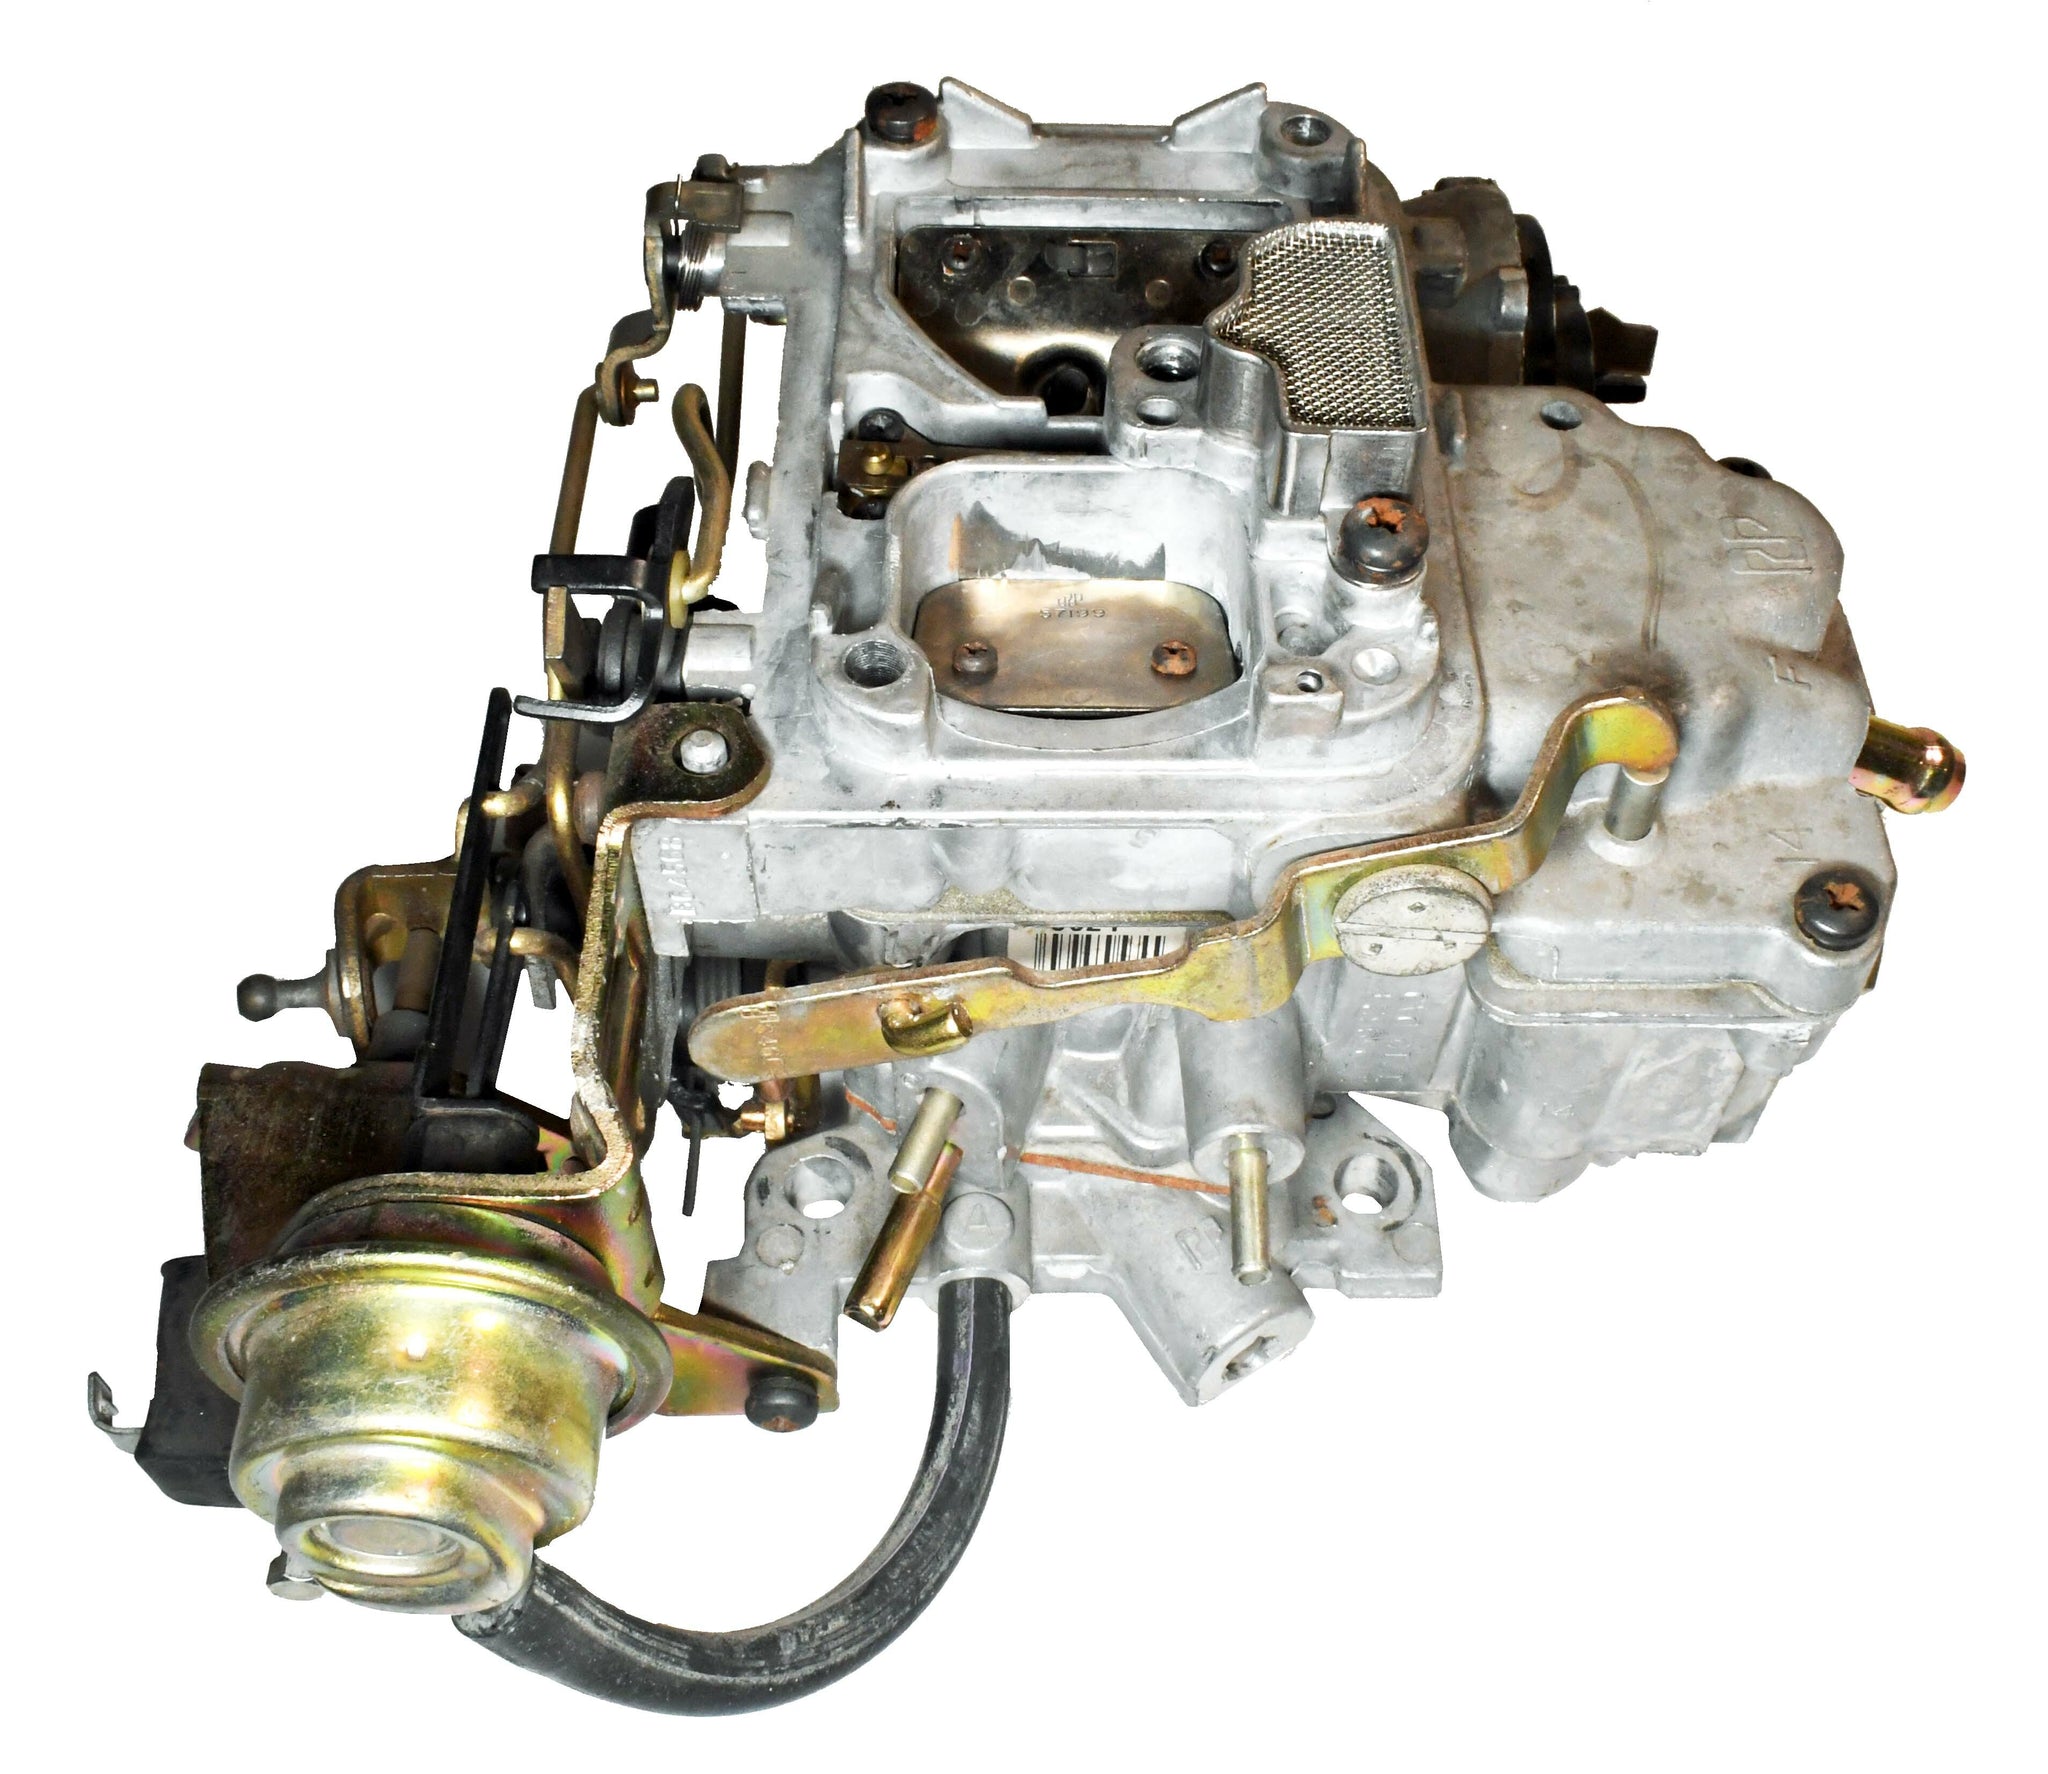 Rochester Varajet 2SE carburetor for 1979-1983 Jeep, AMC and GM  cars with 2.5L 151cid engine 17059624